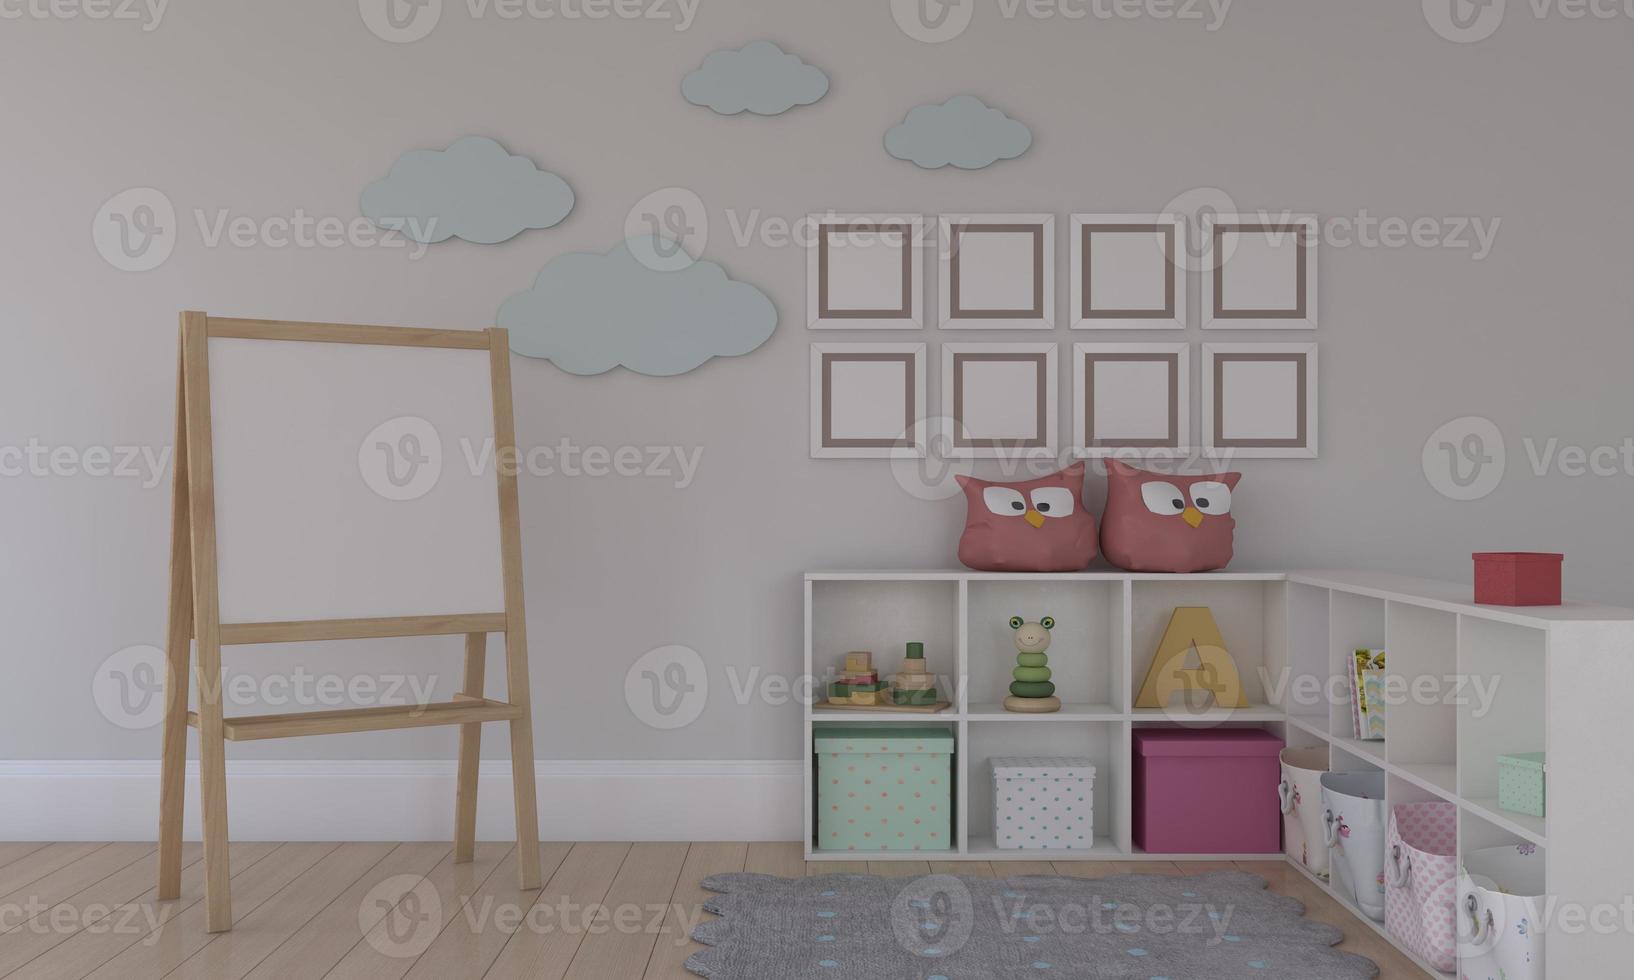 Kinderzimmer, Spielhaus, Kindermöbel mit Spielzeug und Rahmenmodell foto